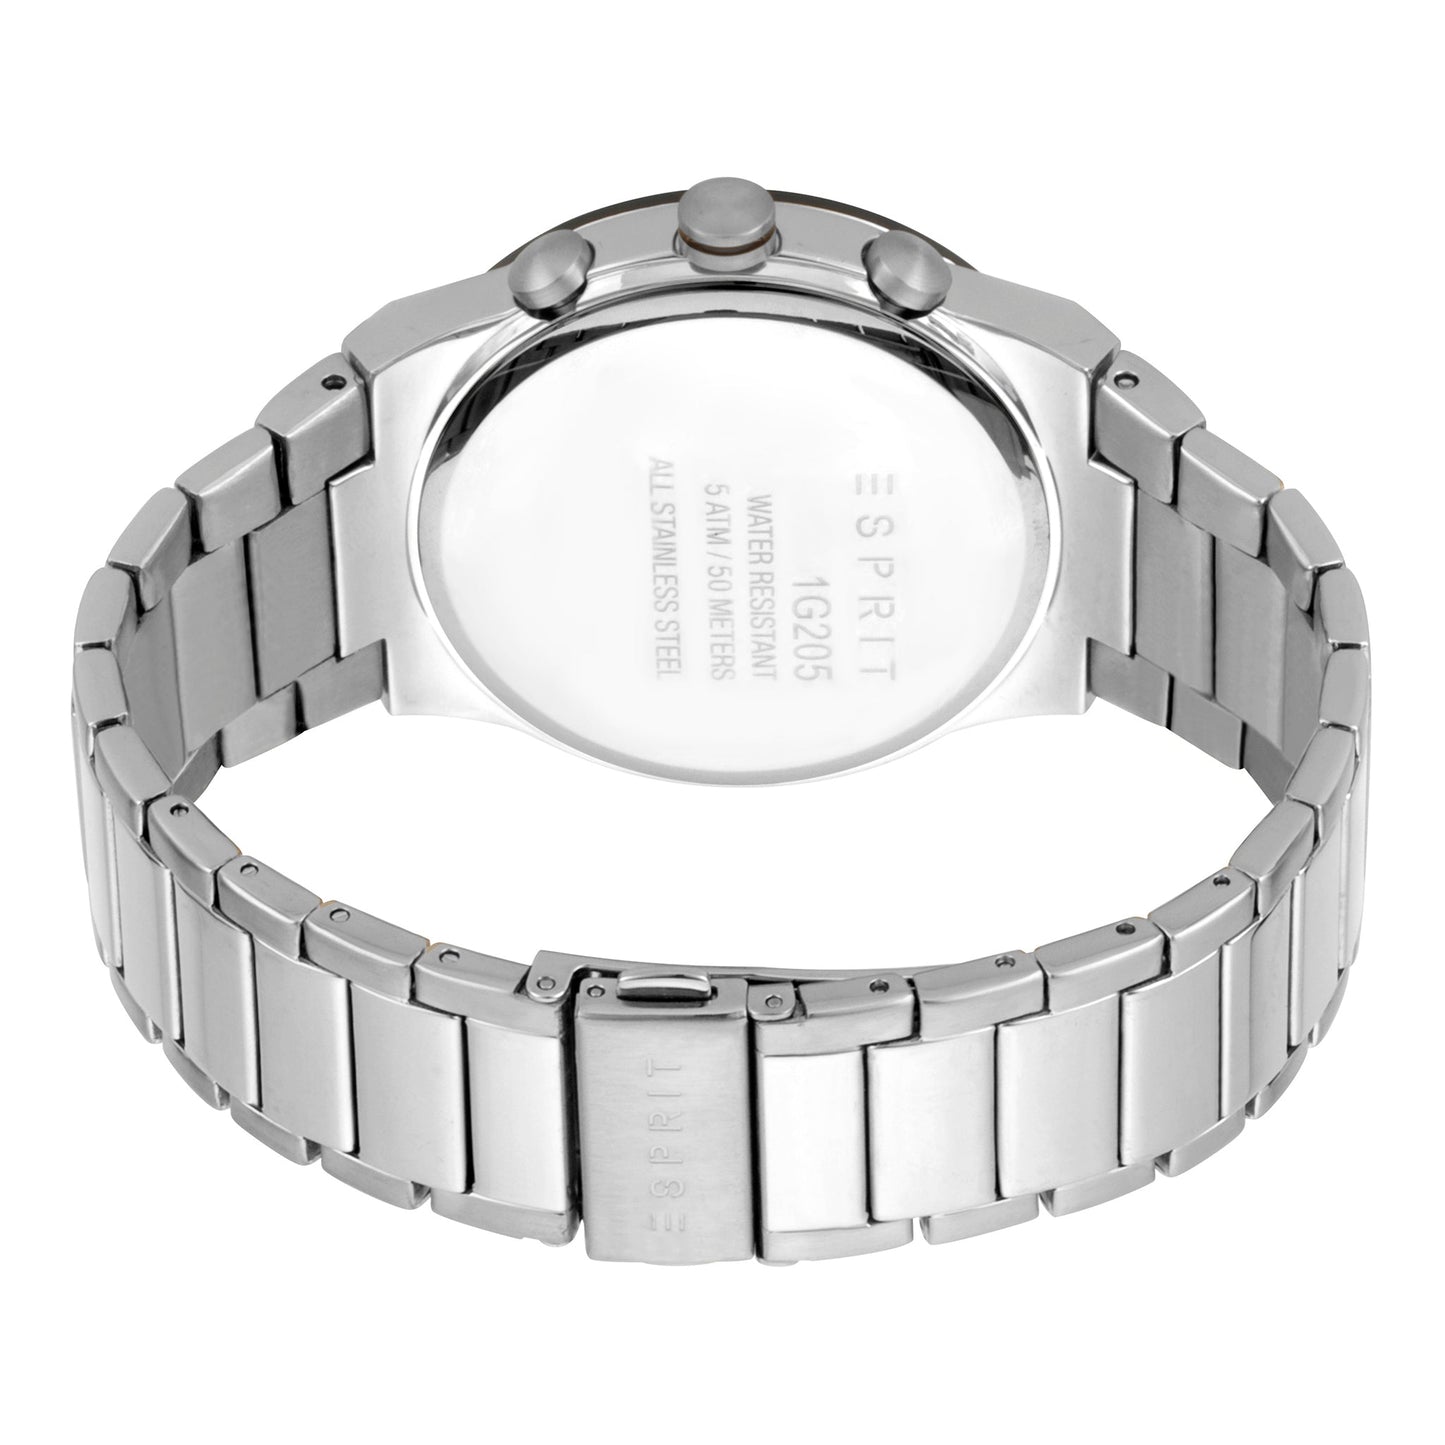 ES1G205M0065 ESPRIT Men's Watch